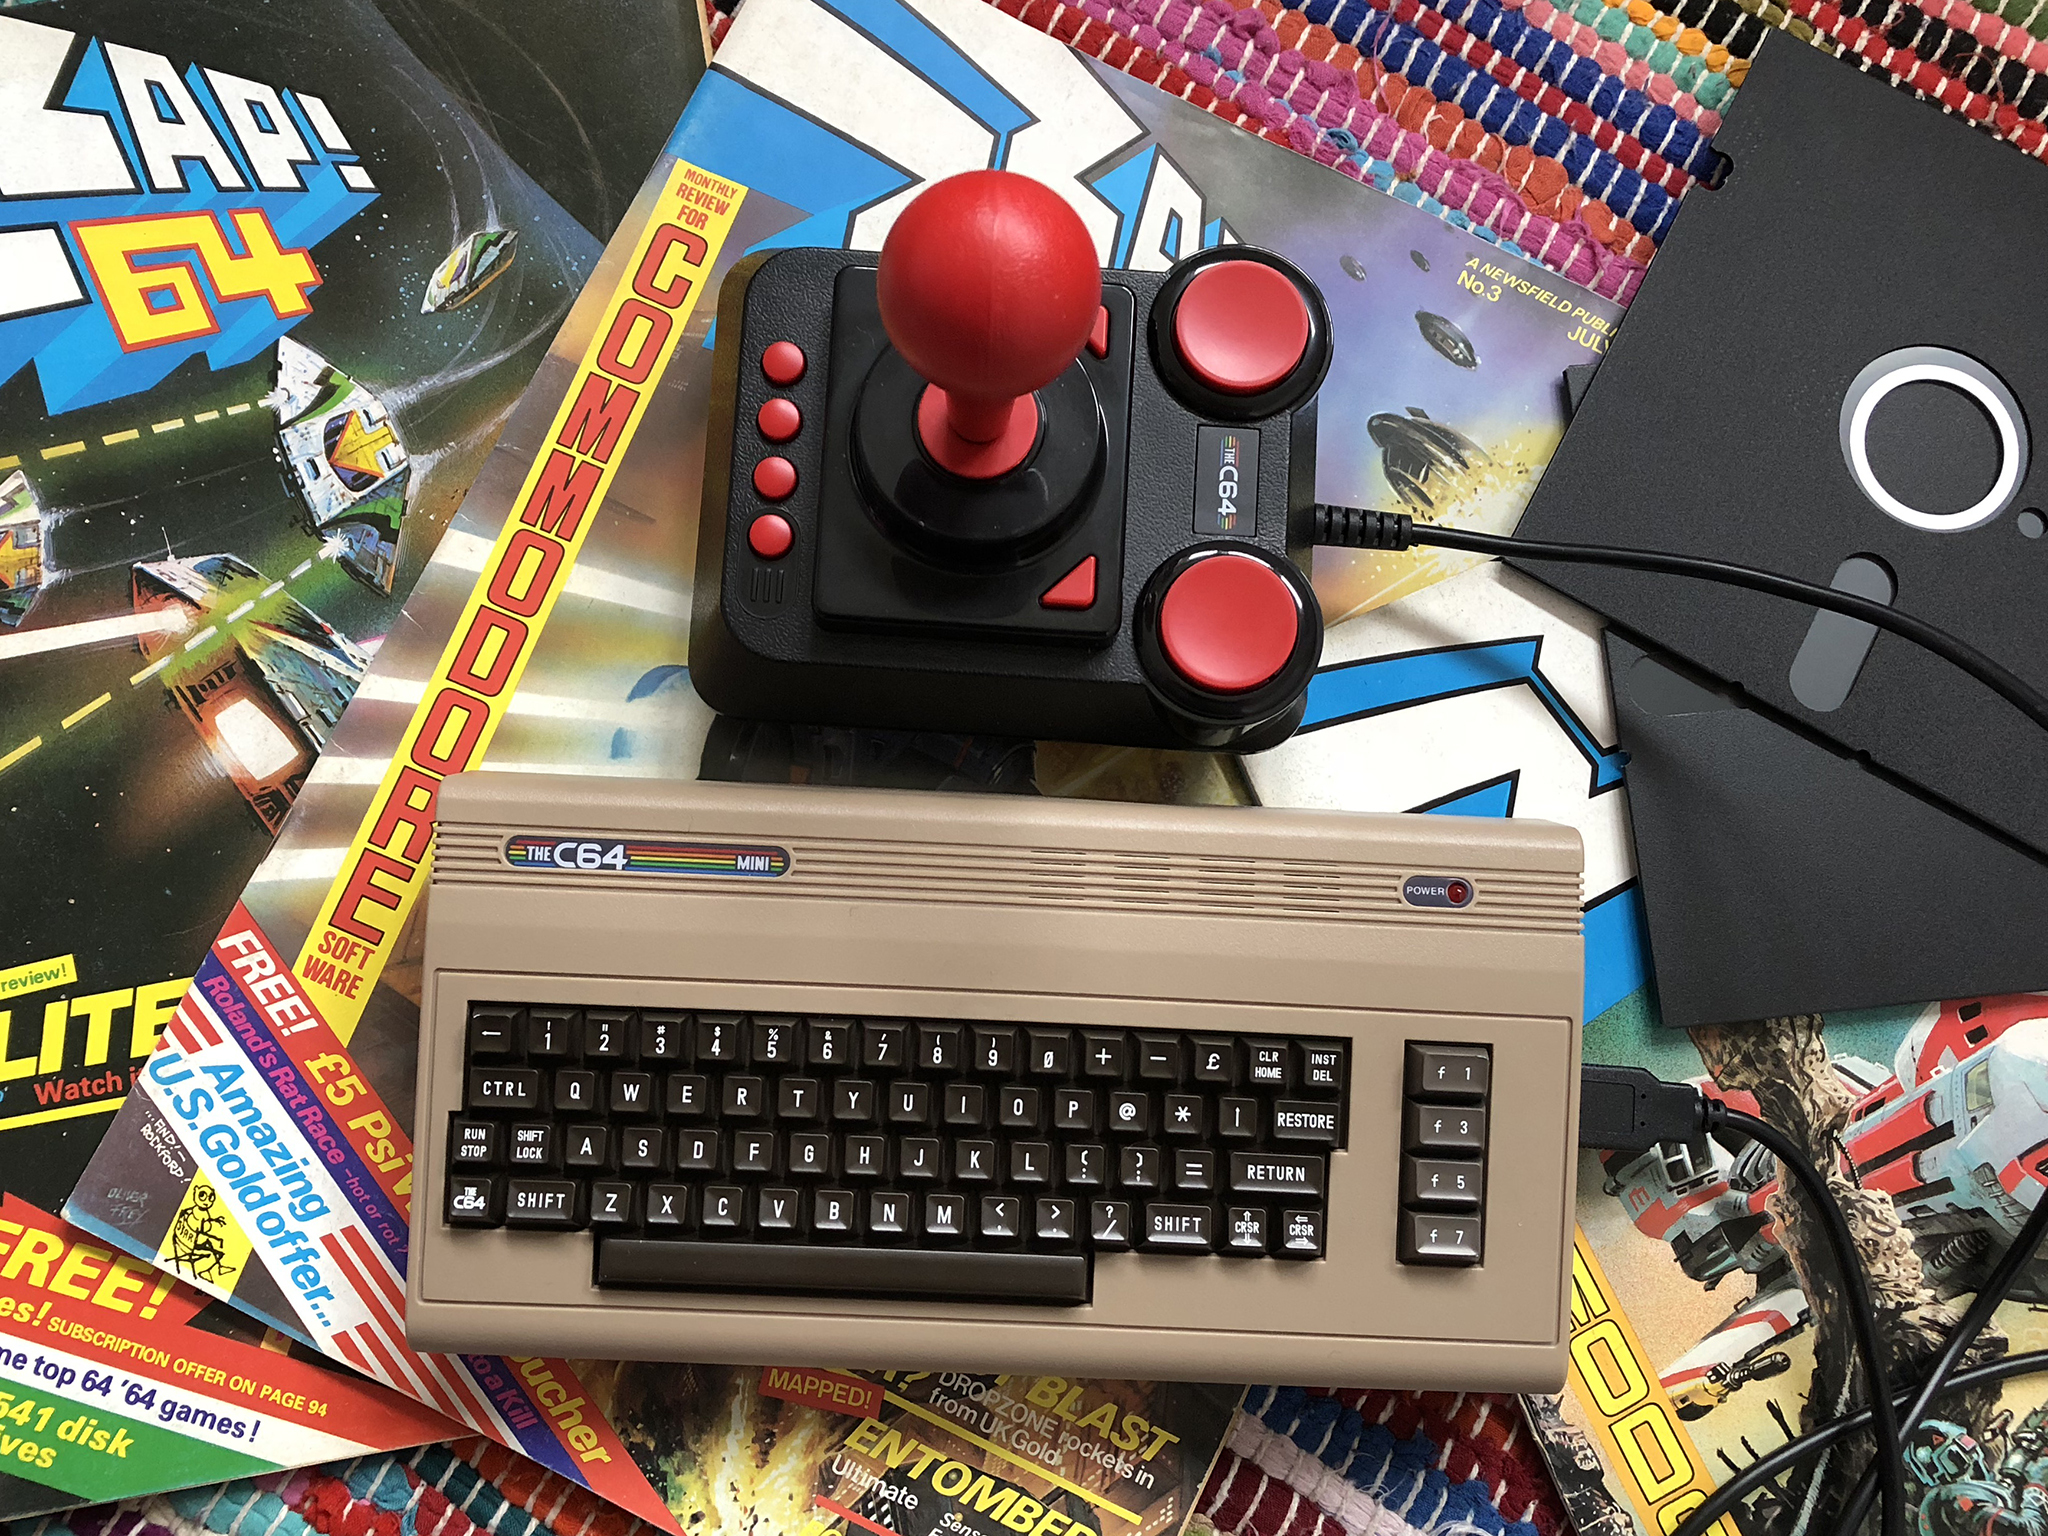 The C64 Mini (£69)